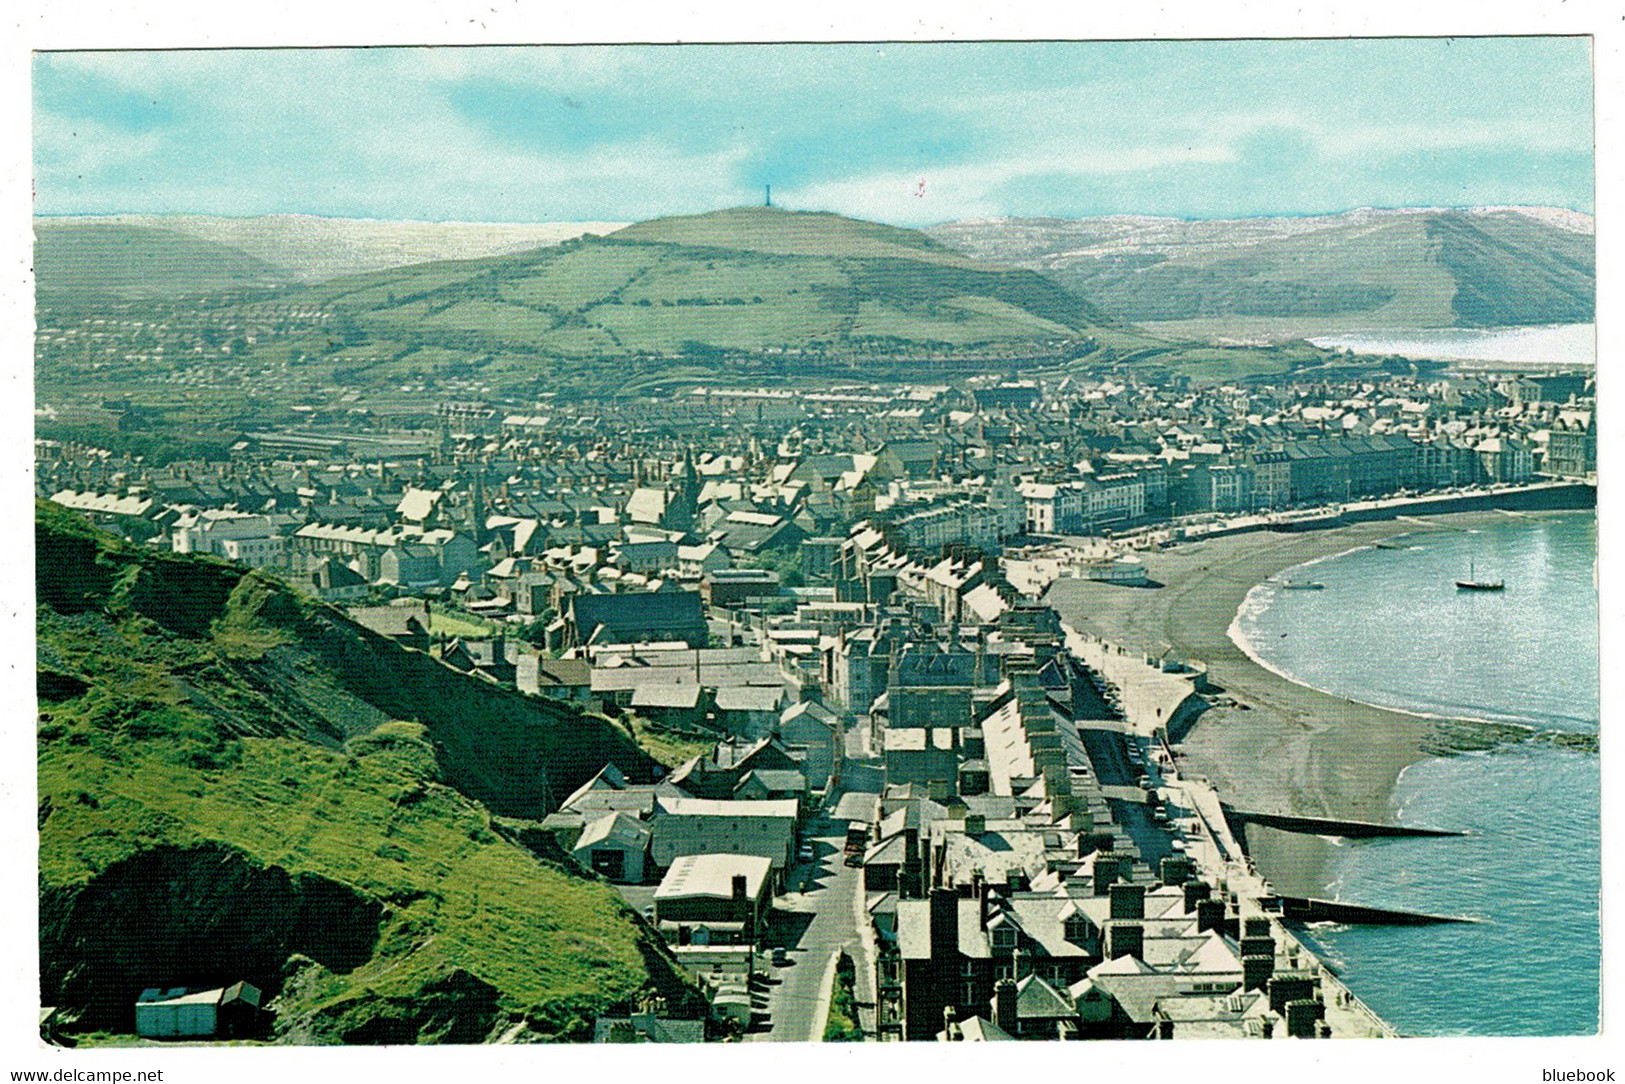 Ref 1524 - 1990 Postcard - Aberystwyth - Cardiganshire Wales - Cardiganshire